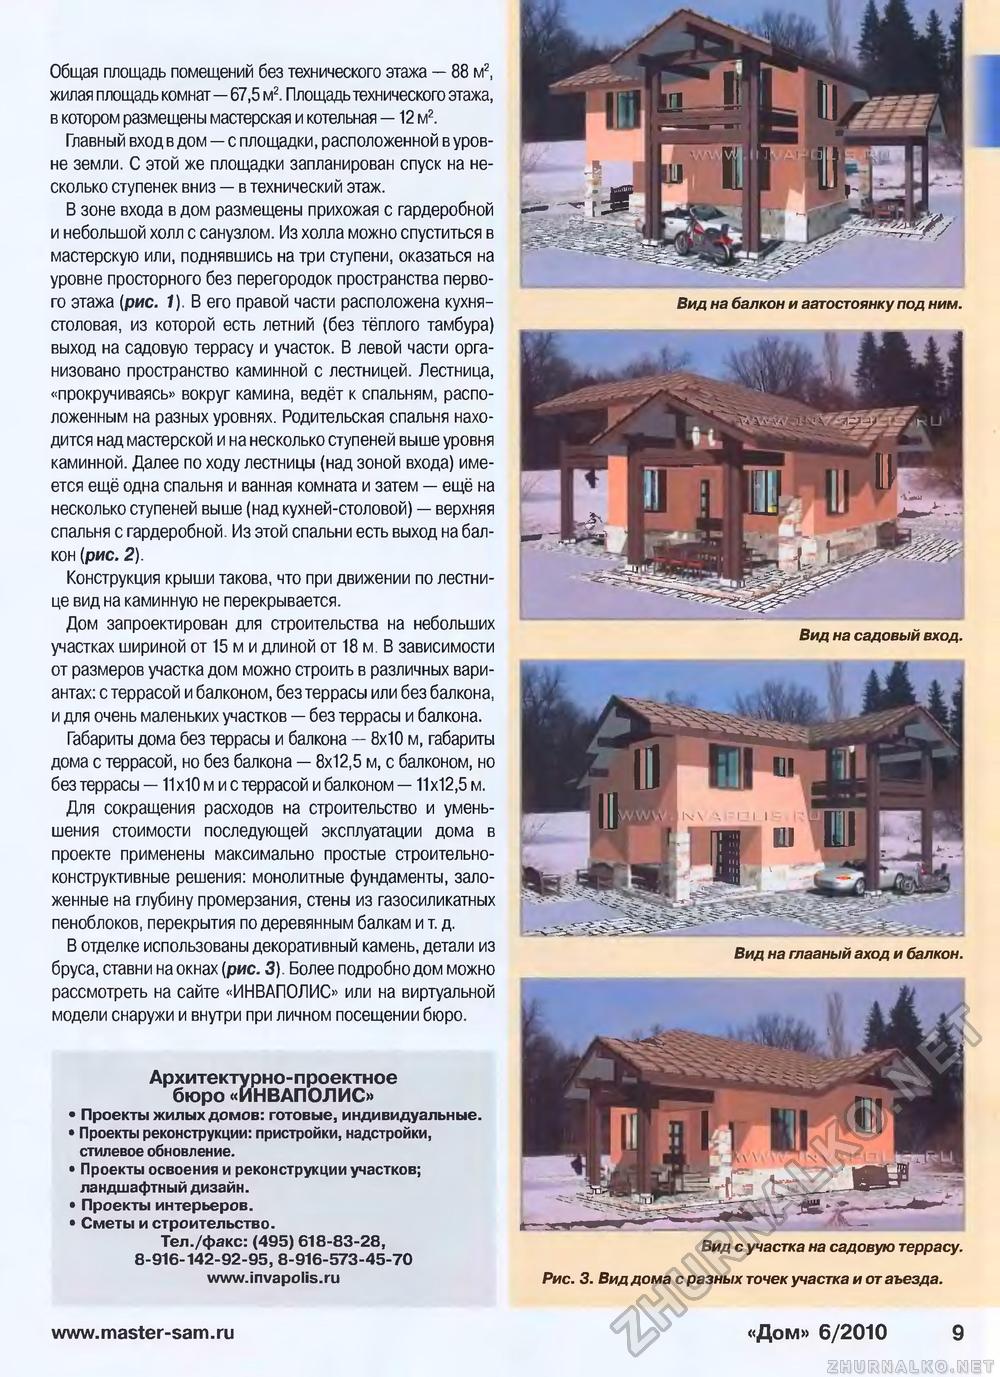 Дом 2010-06, страница 9